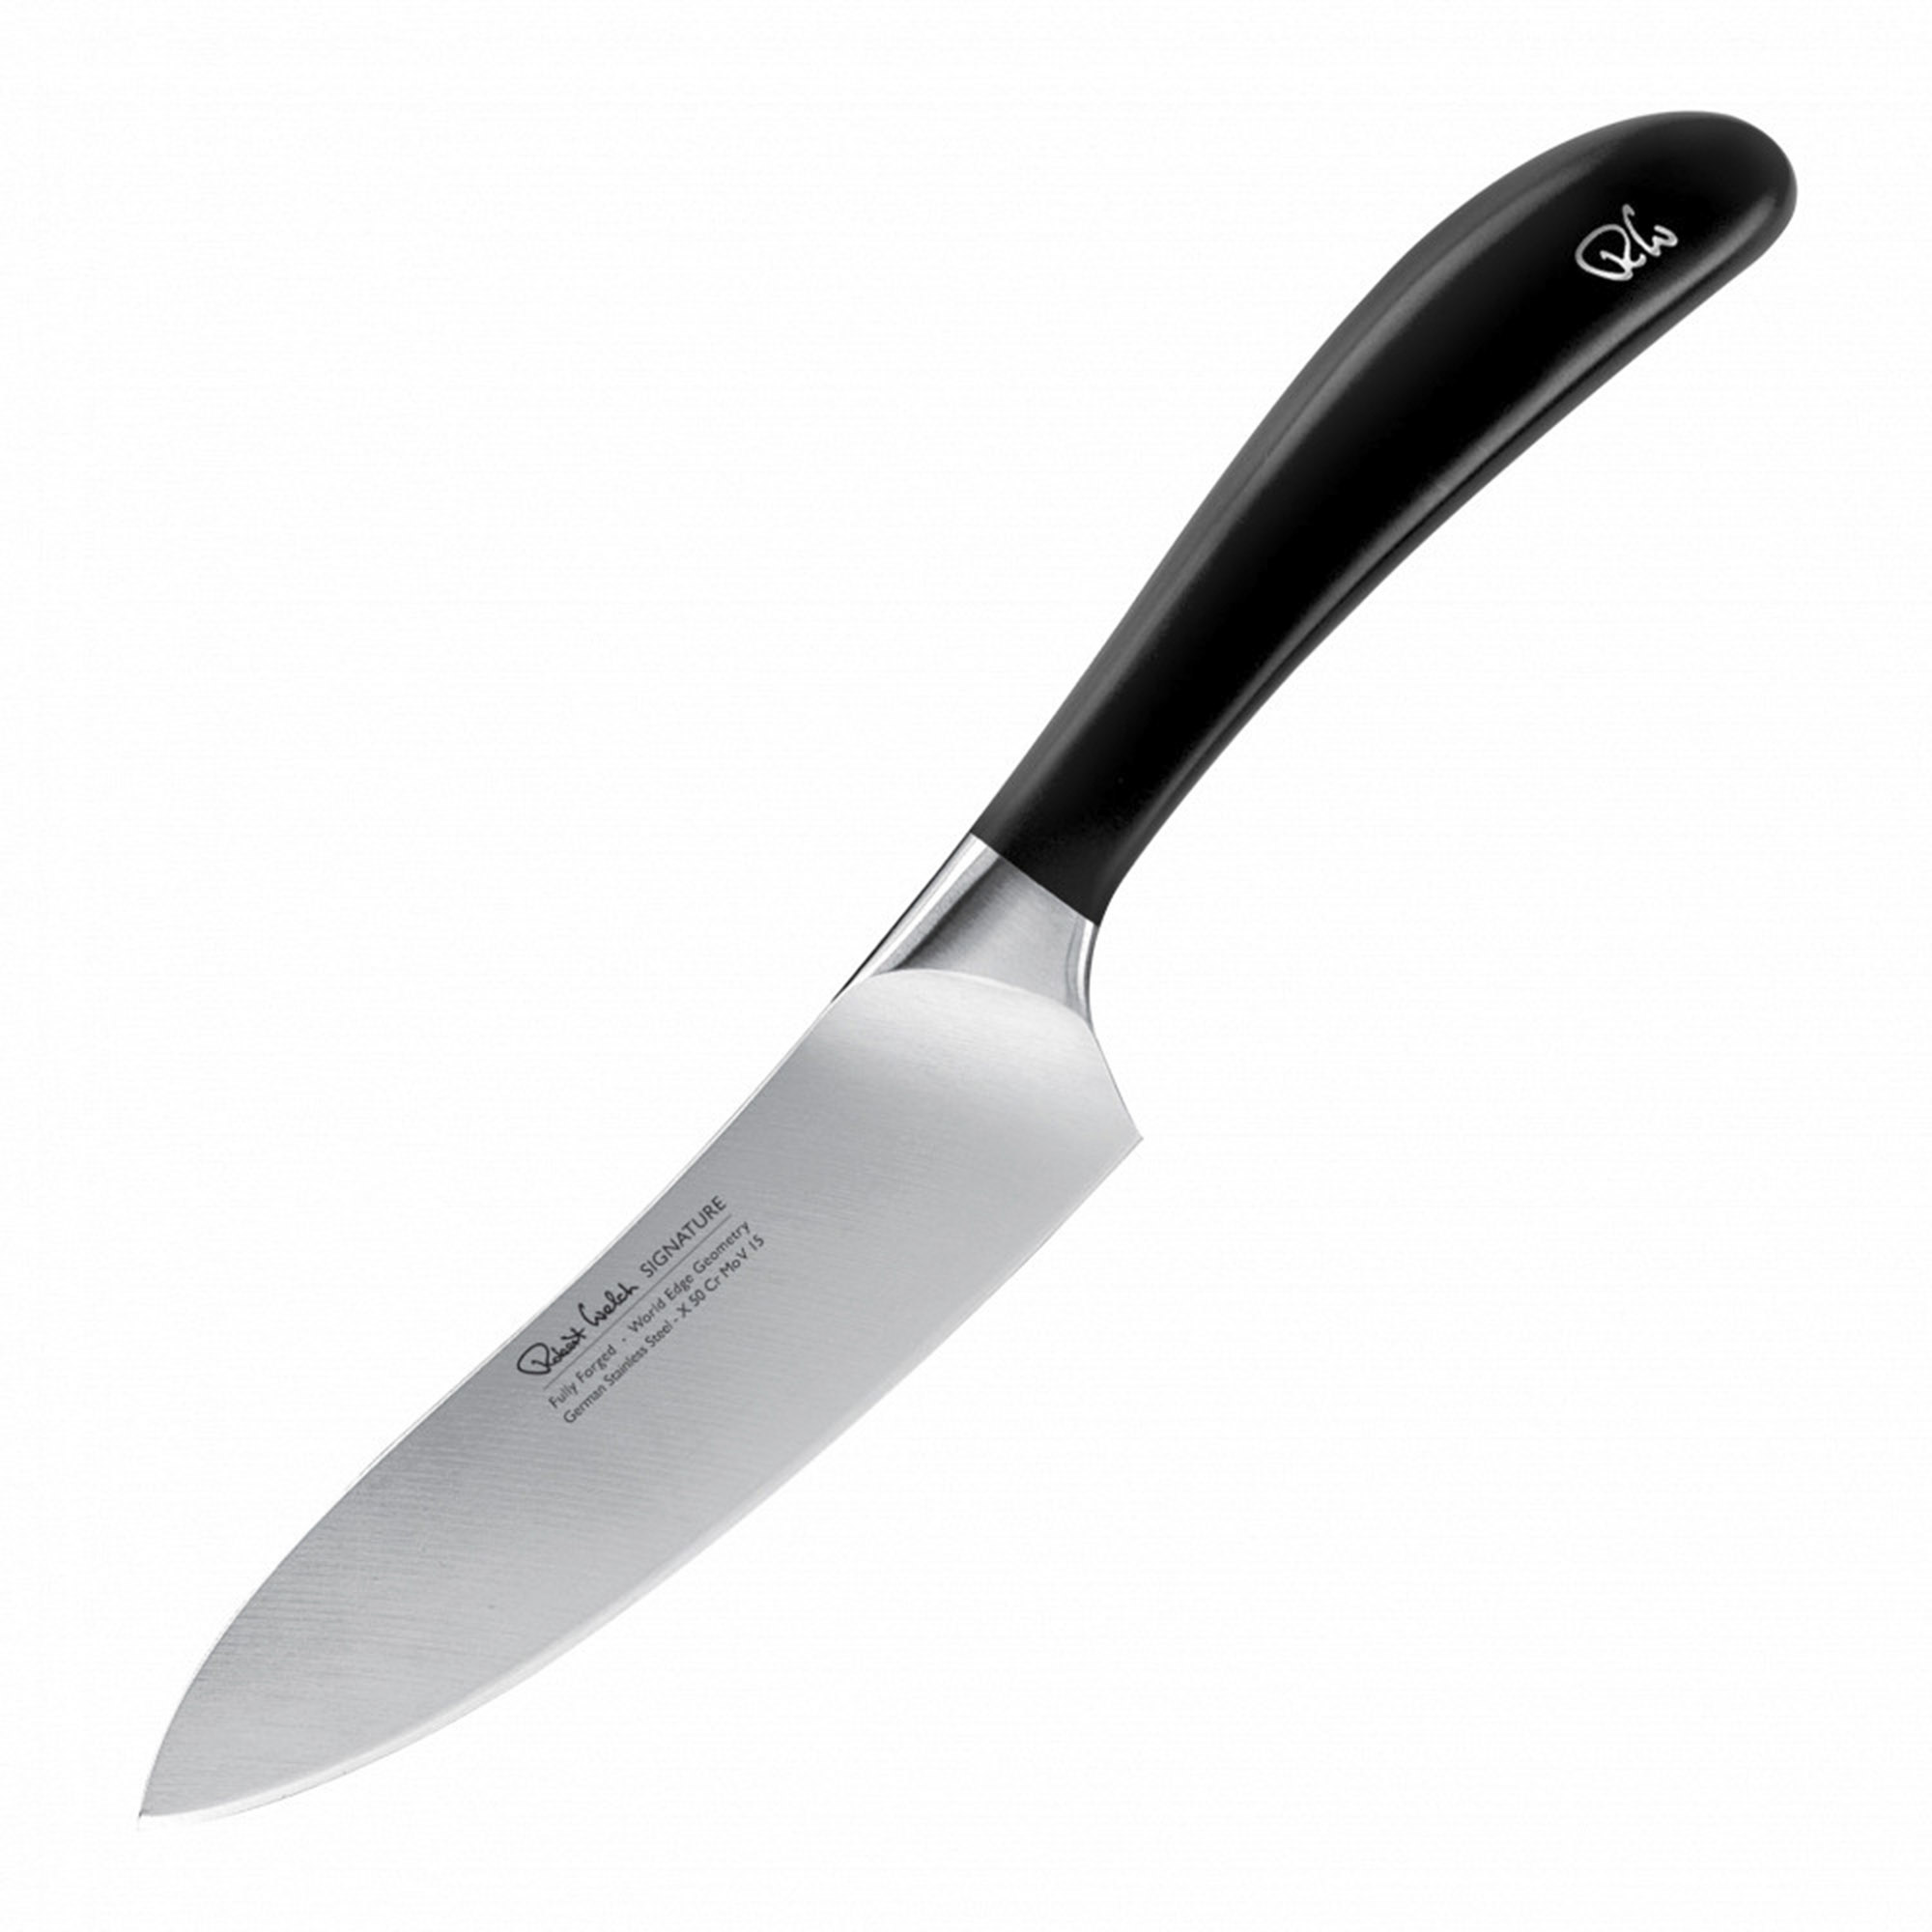 Поварской кухонный шеф-нож Robert Welch Signature 14 см, цвет серебряный - фото 1